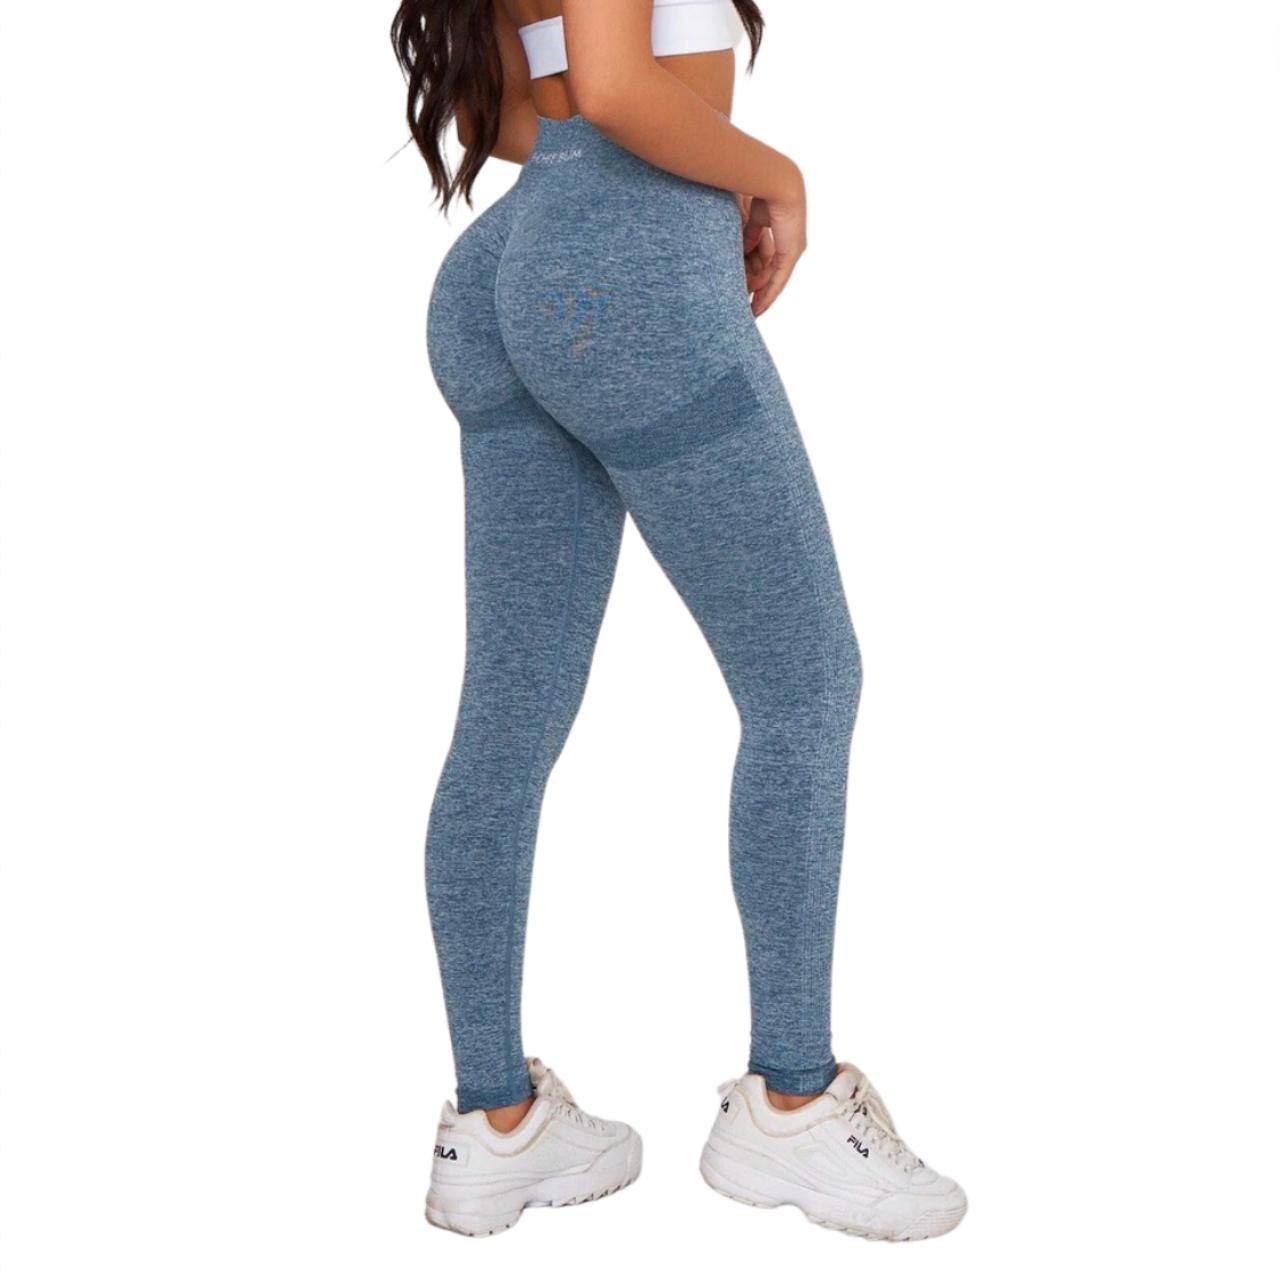  PcheeBum Workout Scrunch Butt Leggings for Women